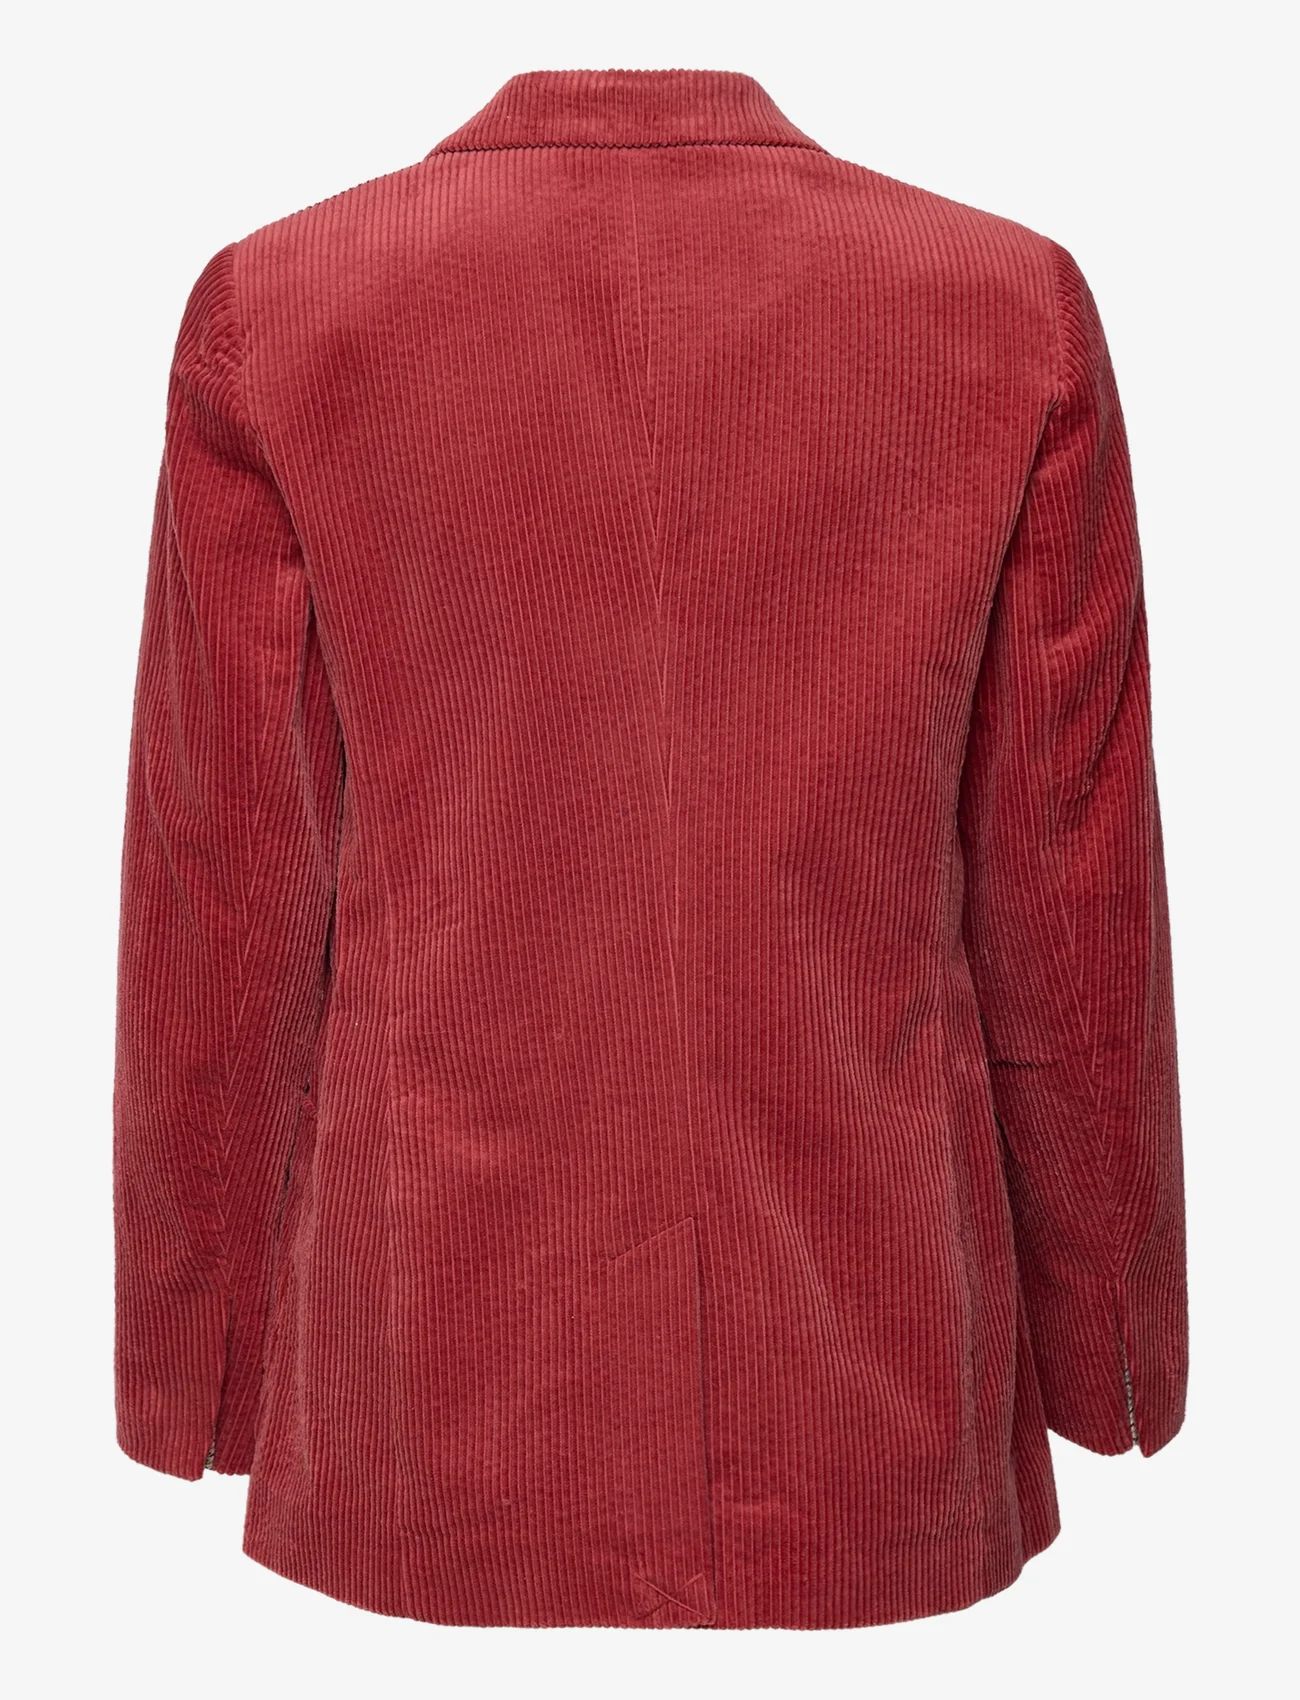 Esprit Casual - Corduroy blazer, 100% cotton - feestelijke kleding voor outlet-prijzen - terracotta - 1